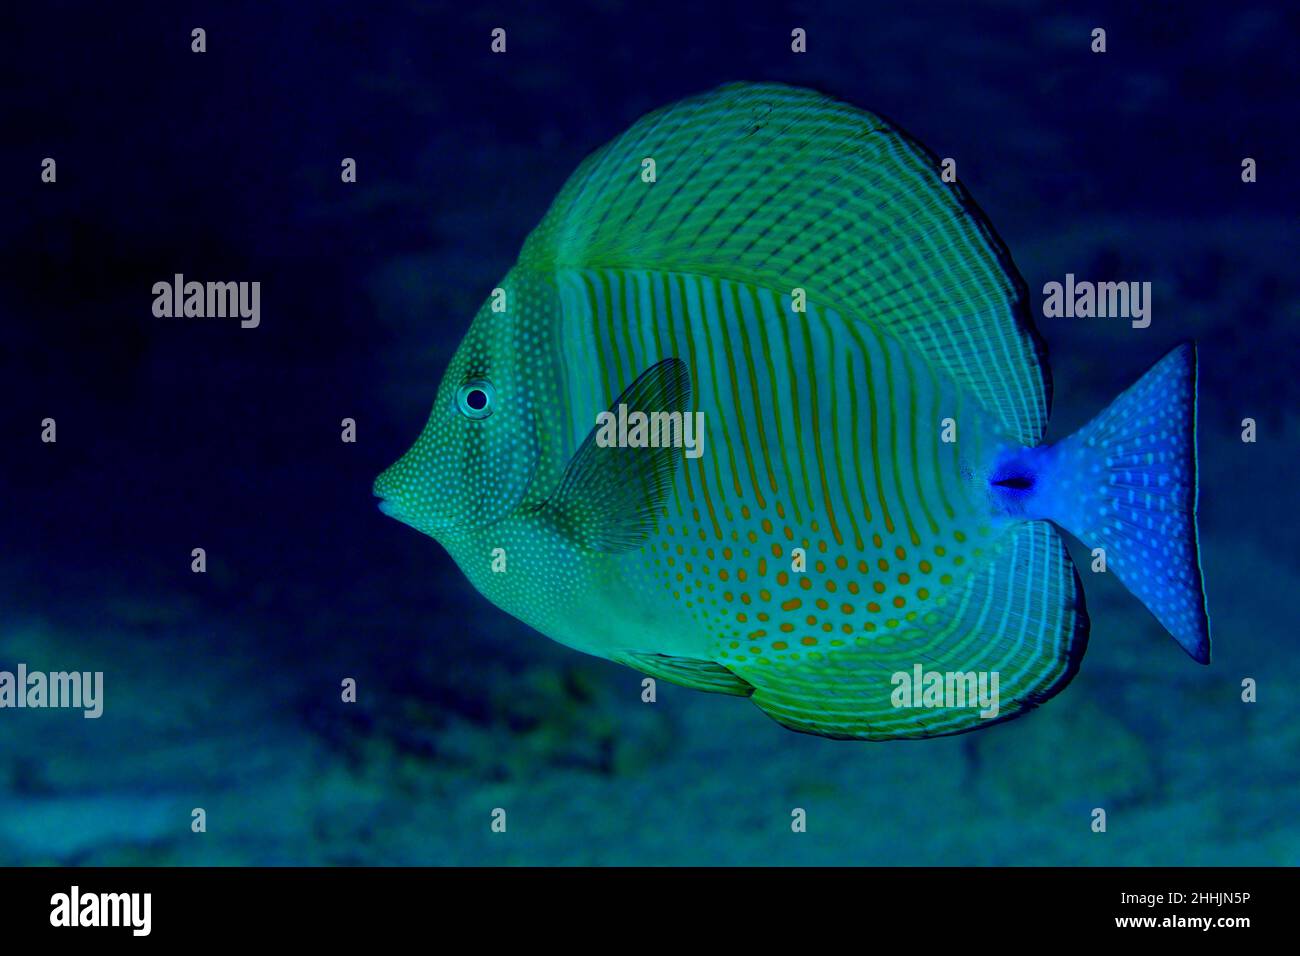 Exotische Zebrasoma-Fische mit scheibenförmigem Körper und leuchtend blauem Schwanz schwimmen unter dem klaren roten Meer mit sandigen Boden Stockfoto